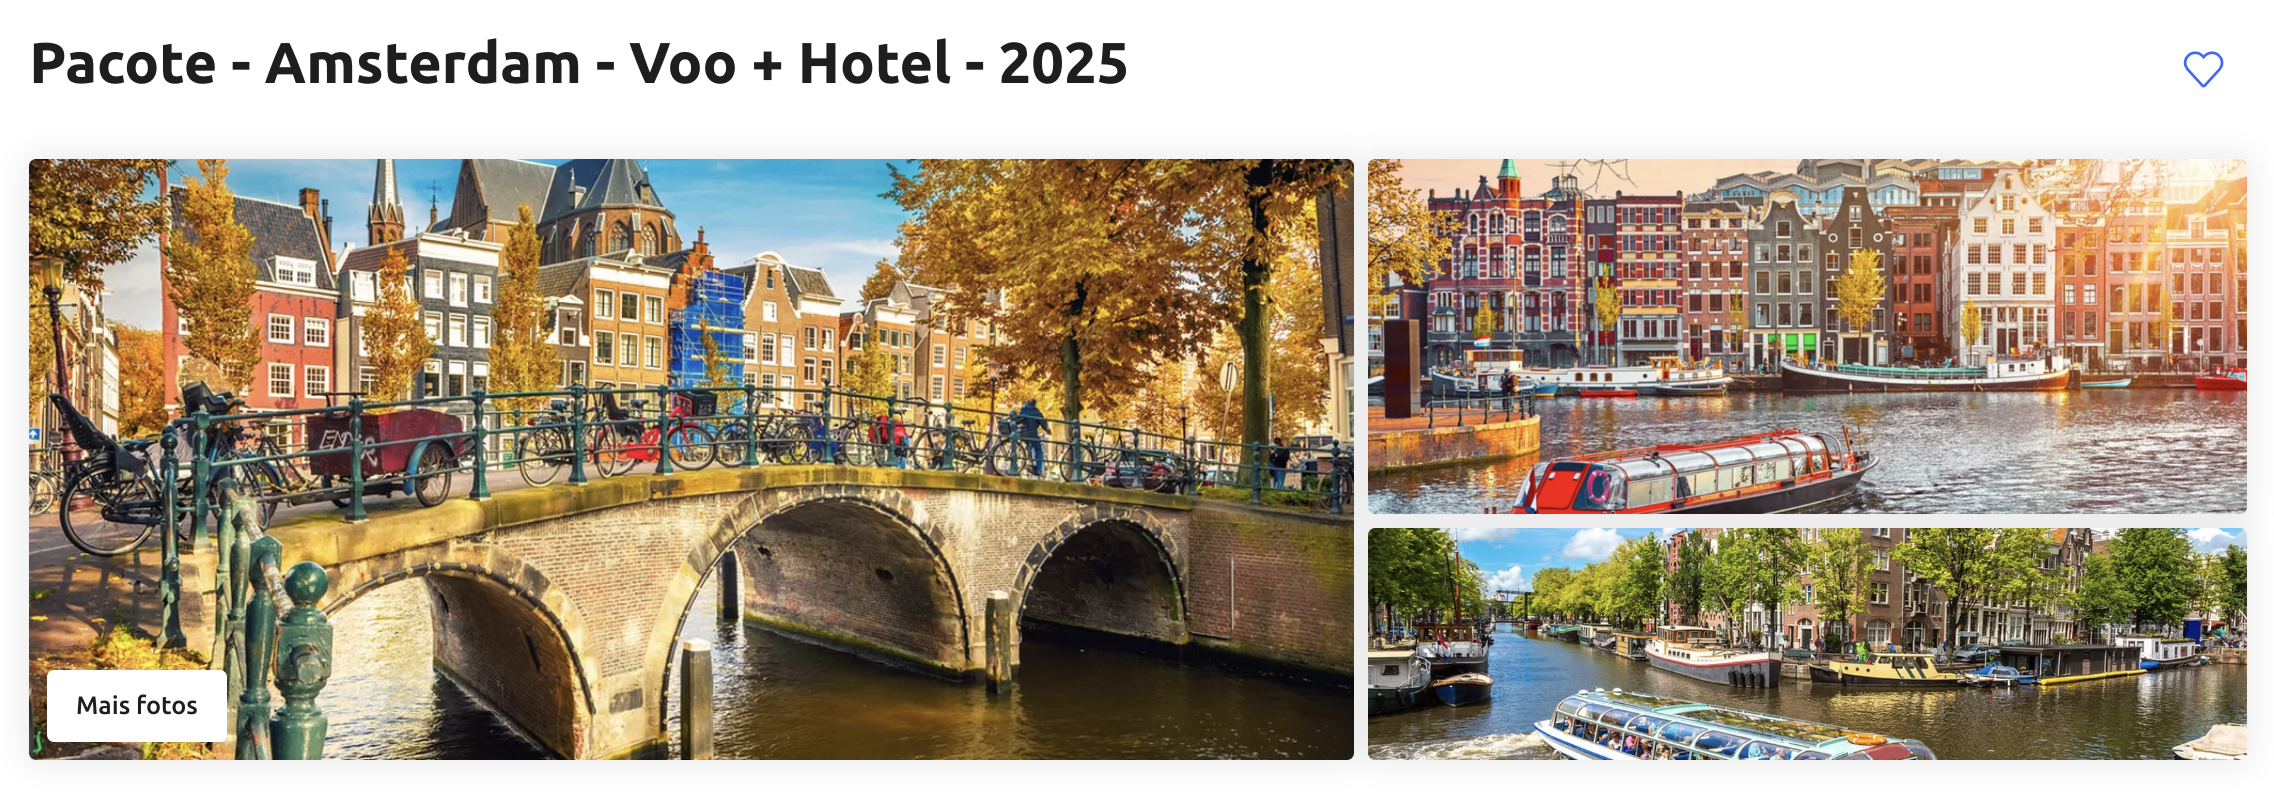 Pacote - Amsterdam - Voo + Hotel - 2025